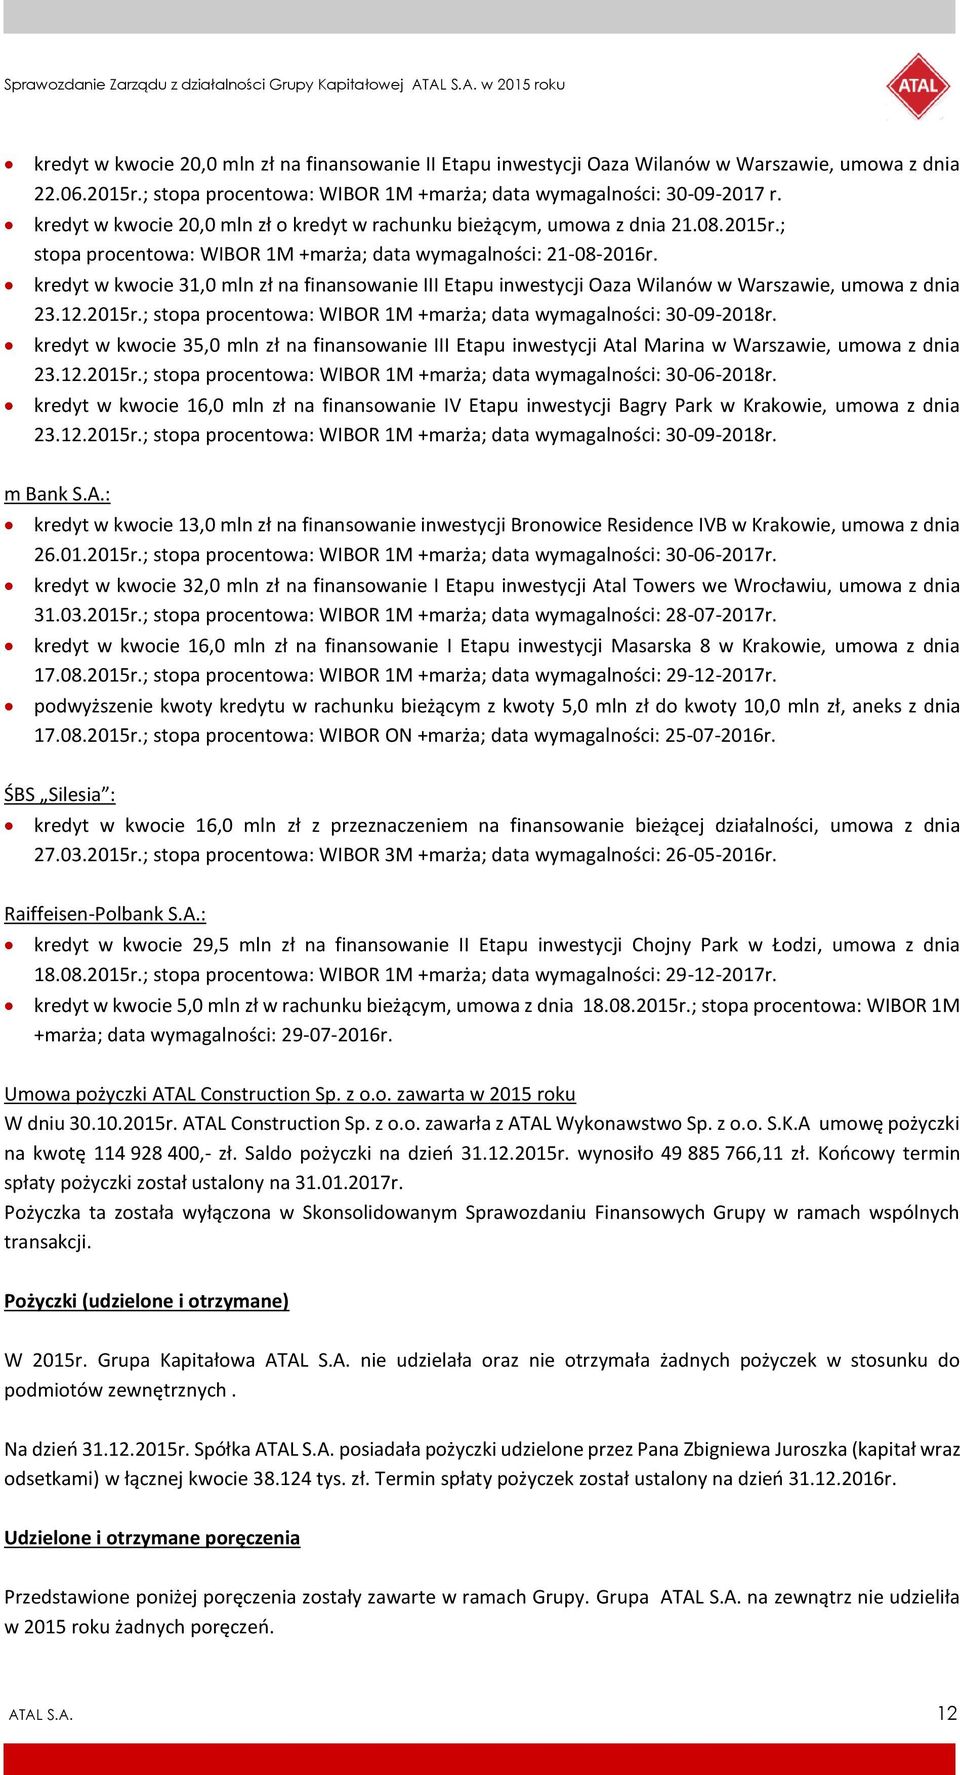 kredyt w kwocie 31,0 mln zł na finansowanie III Etapu inwestycji Oaza Wilanów w Warszawie, umowa z dnia 23.12.2015r.; stopa procentowa: WIBOR 1M +marża; data wymagalności: 30-09-2018r.